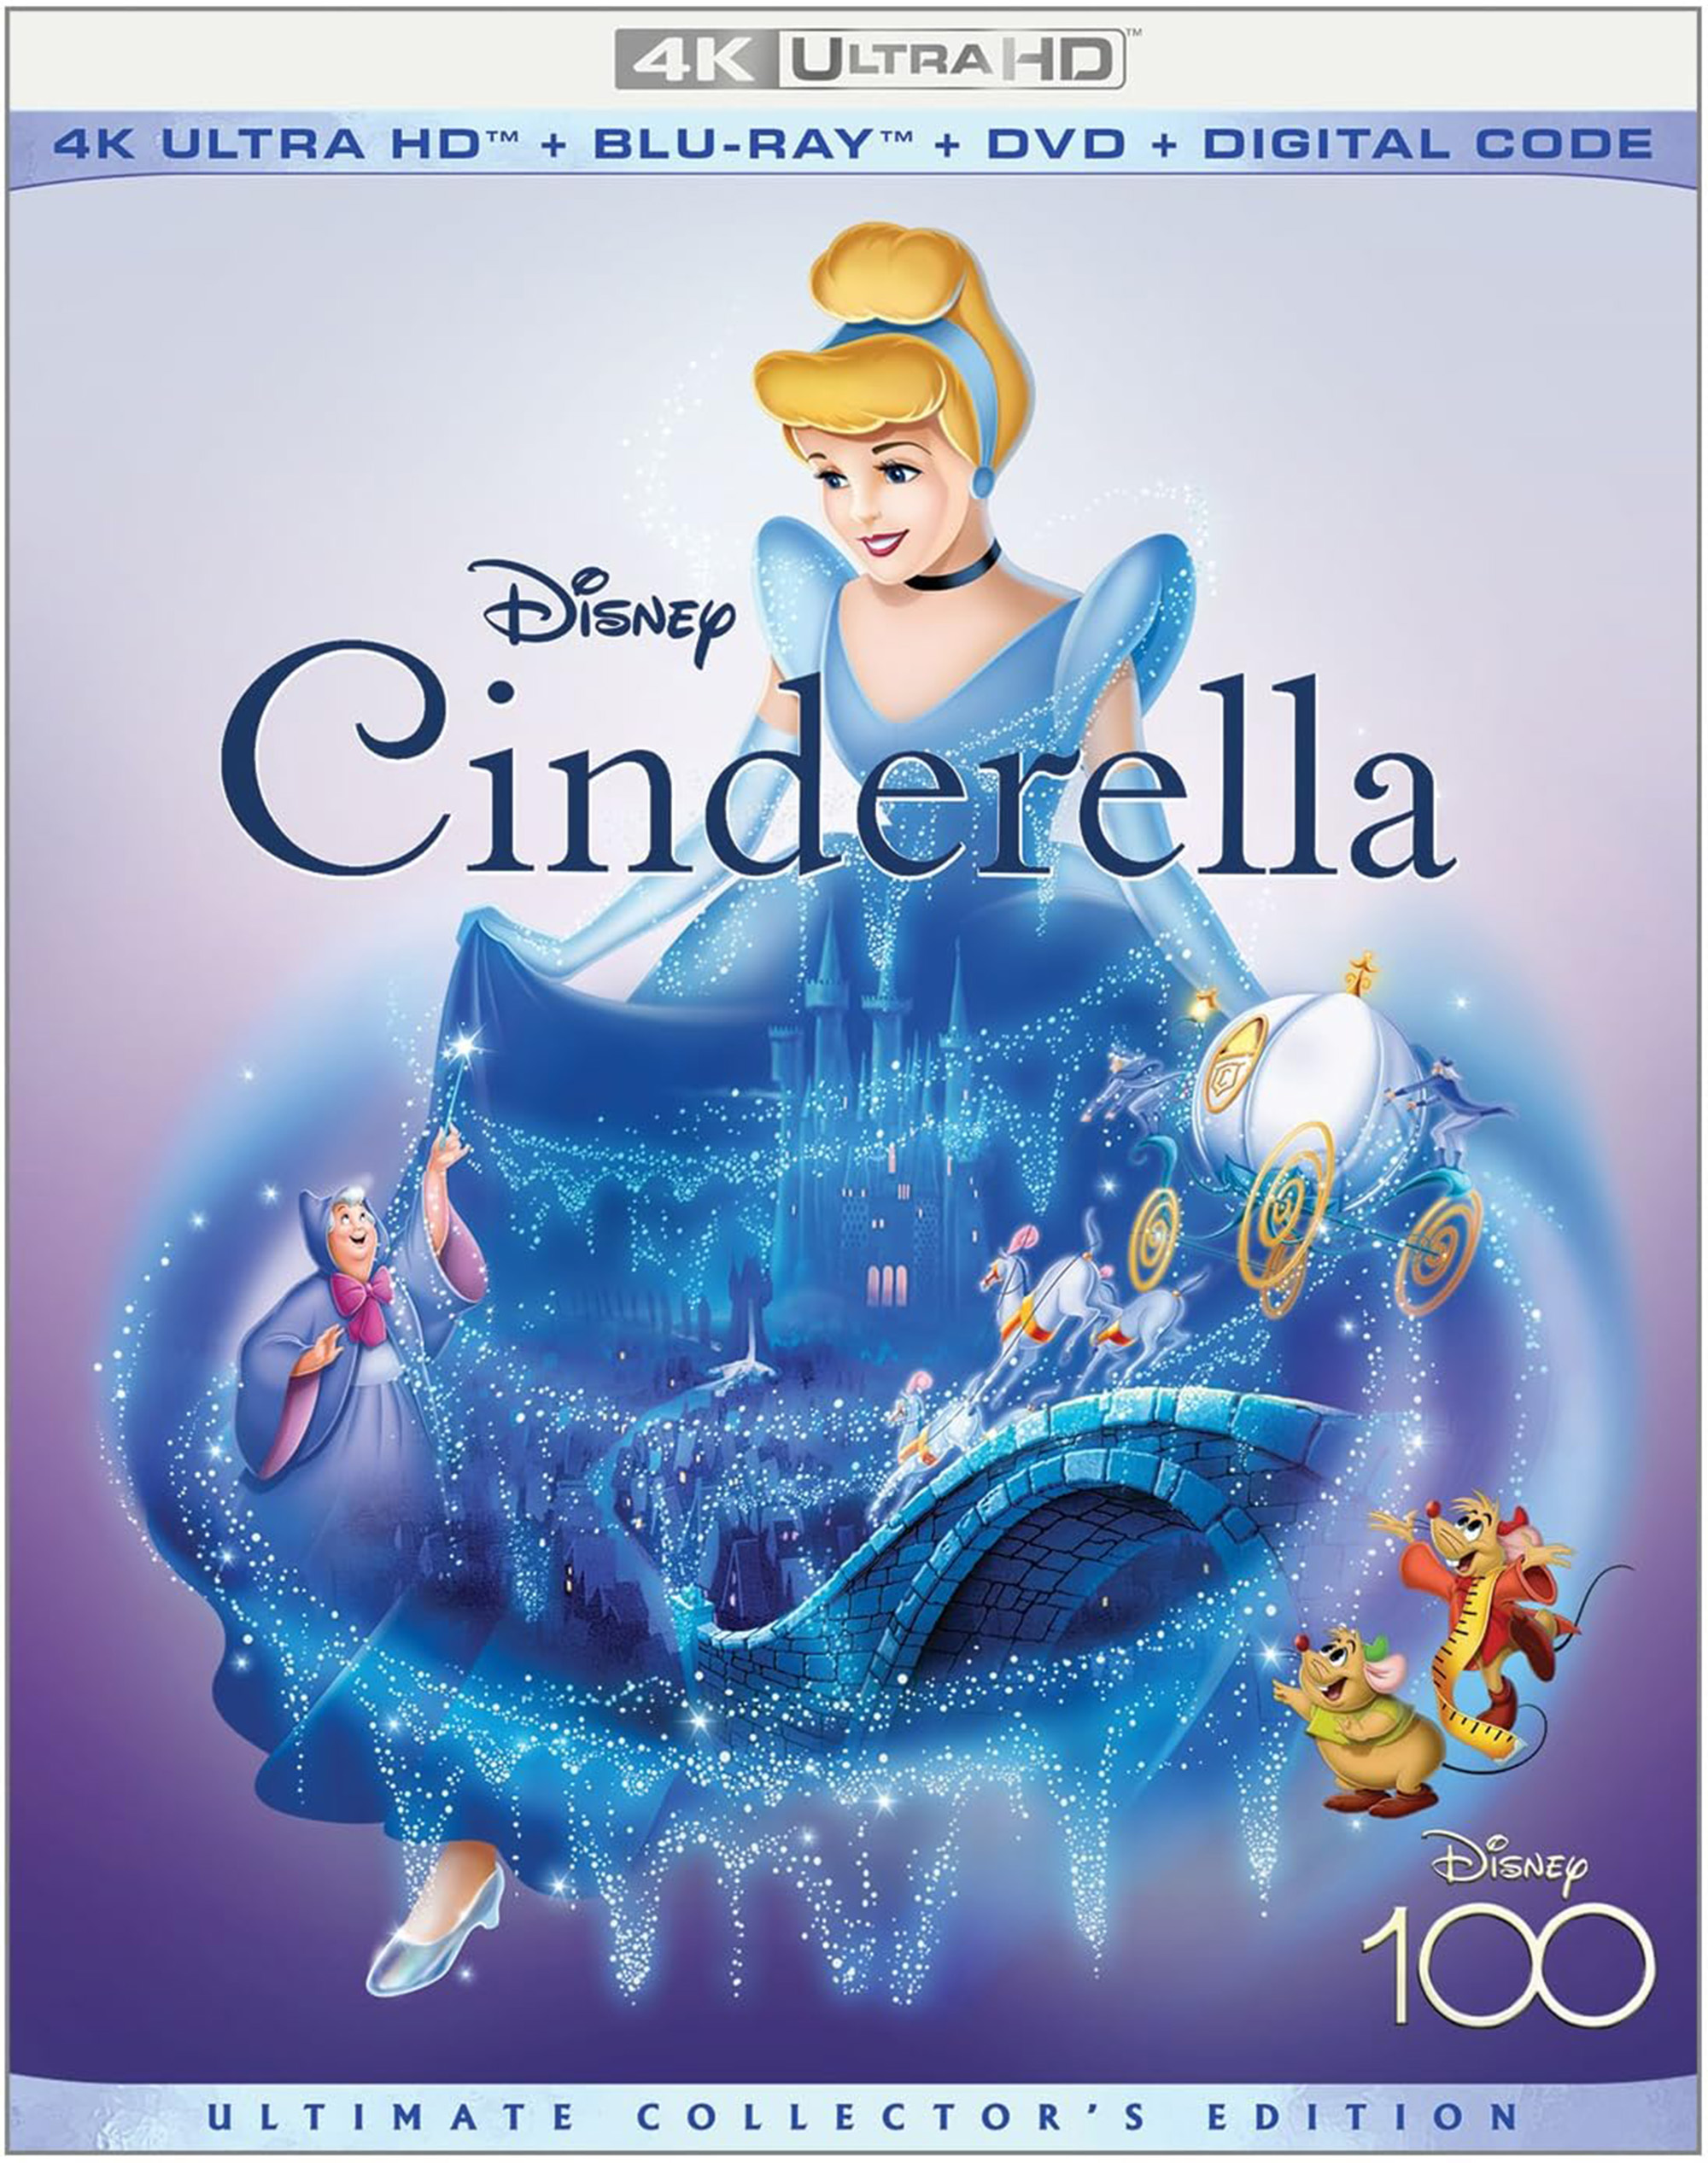 Cinderella's Original Movie Advertising Proves A Disney